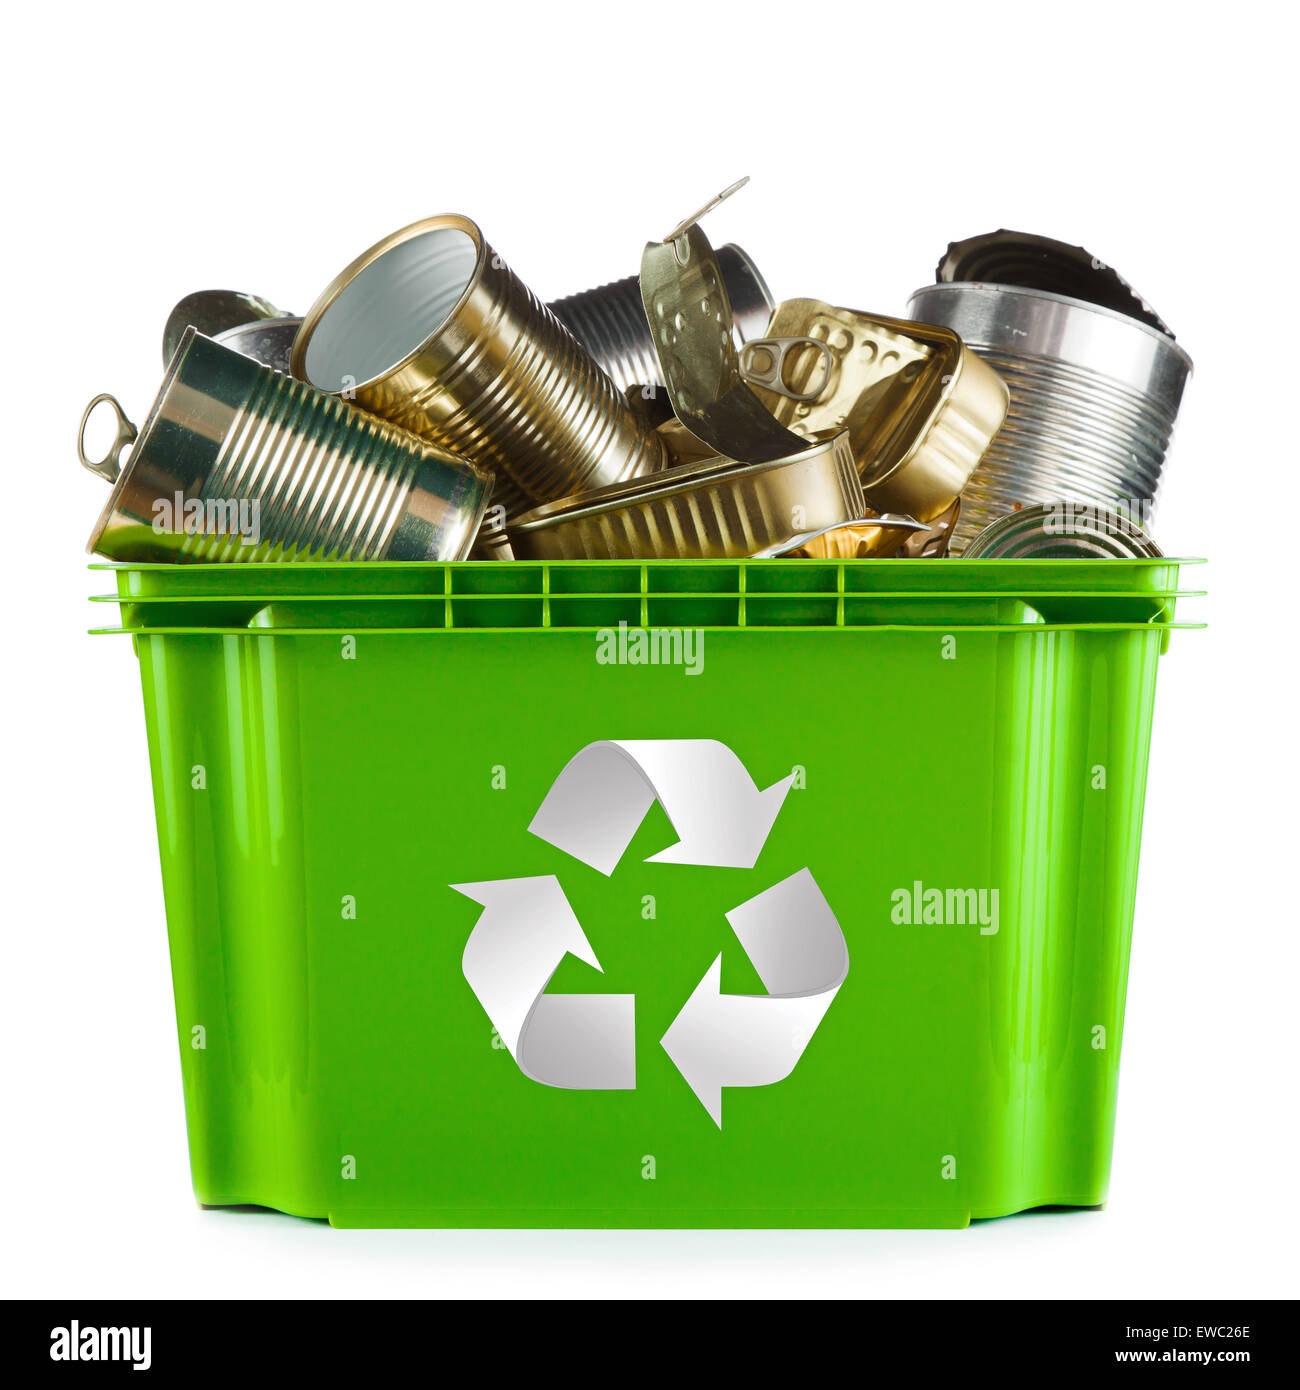 Concepto de reciclaje - tolva llena de latas metálicas vacías Foto de stock